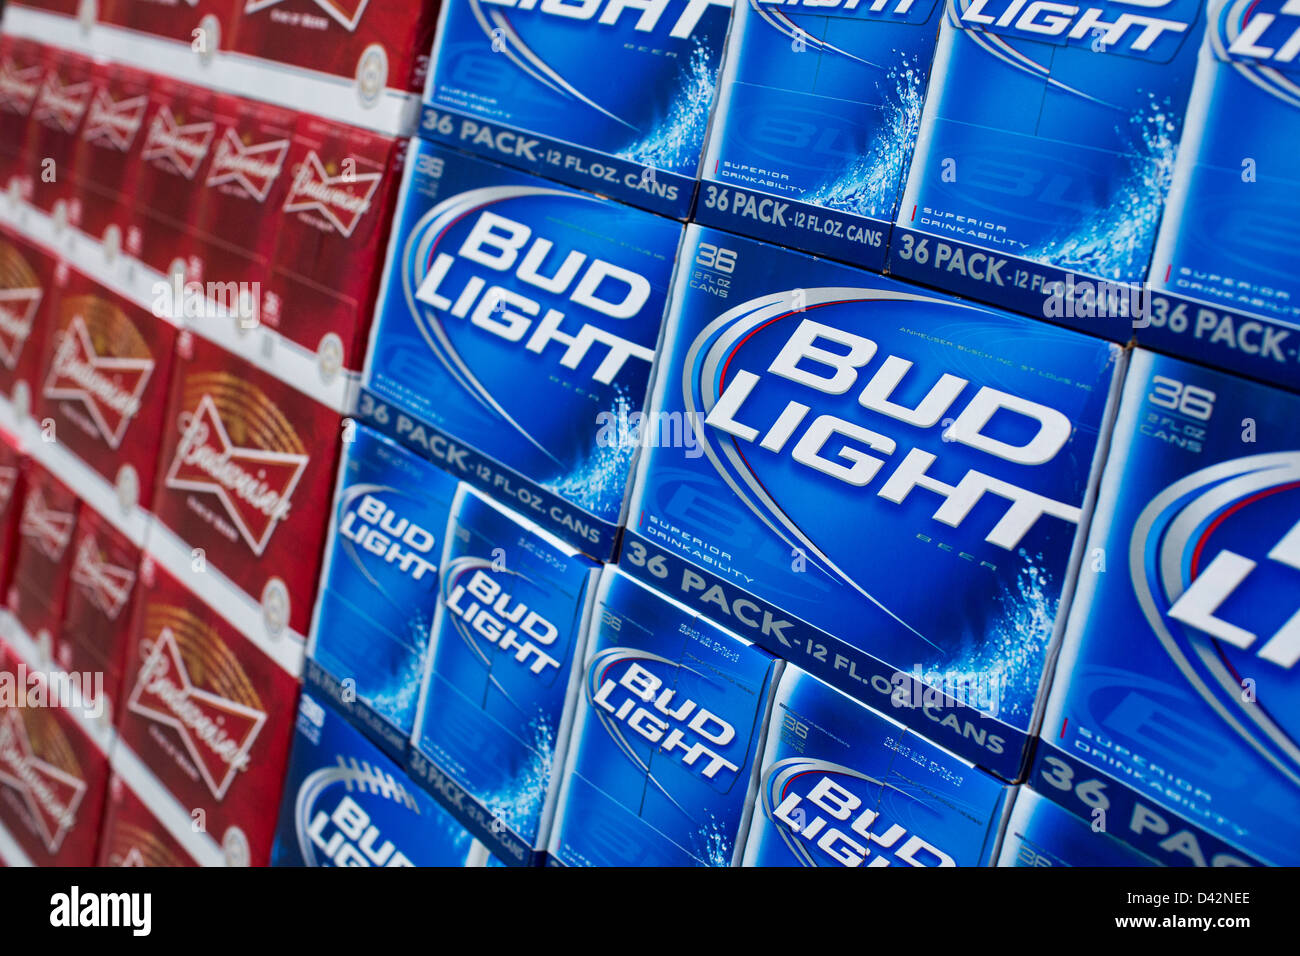 Budweiser et Bud Light beer sur l'affichage à un entrepôt Costco Wholesale Club. Banque D'Images